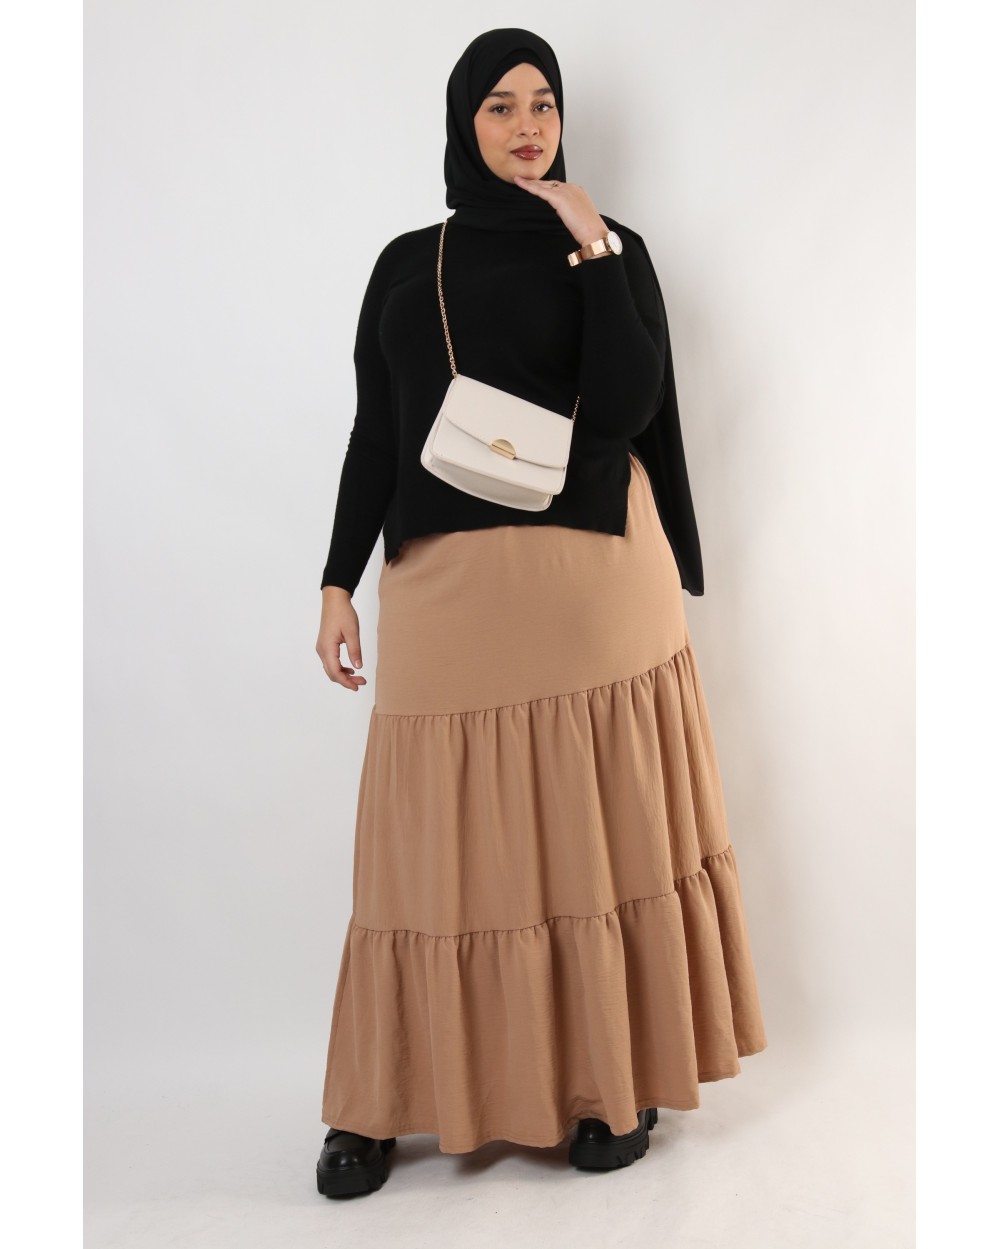 Long ruffled skirt